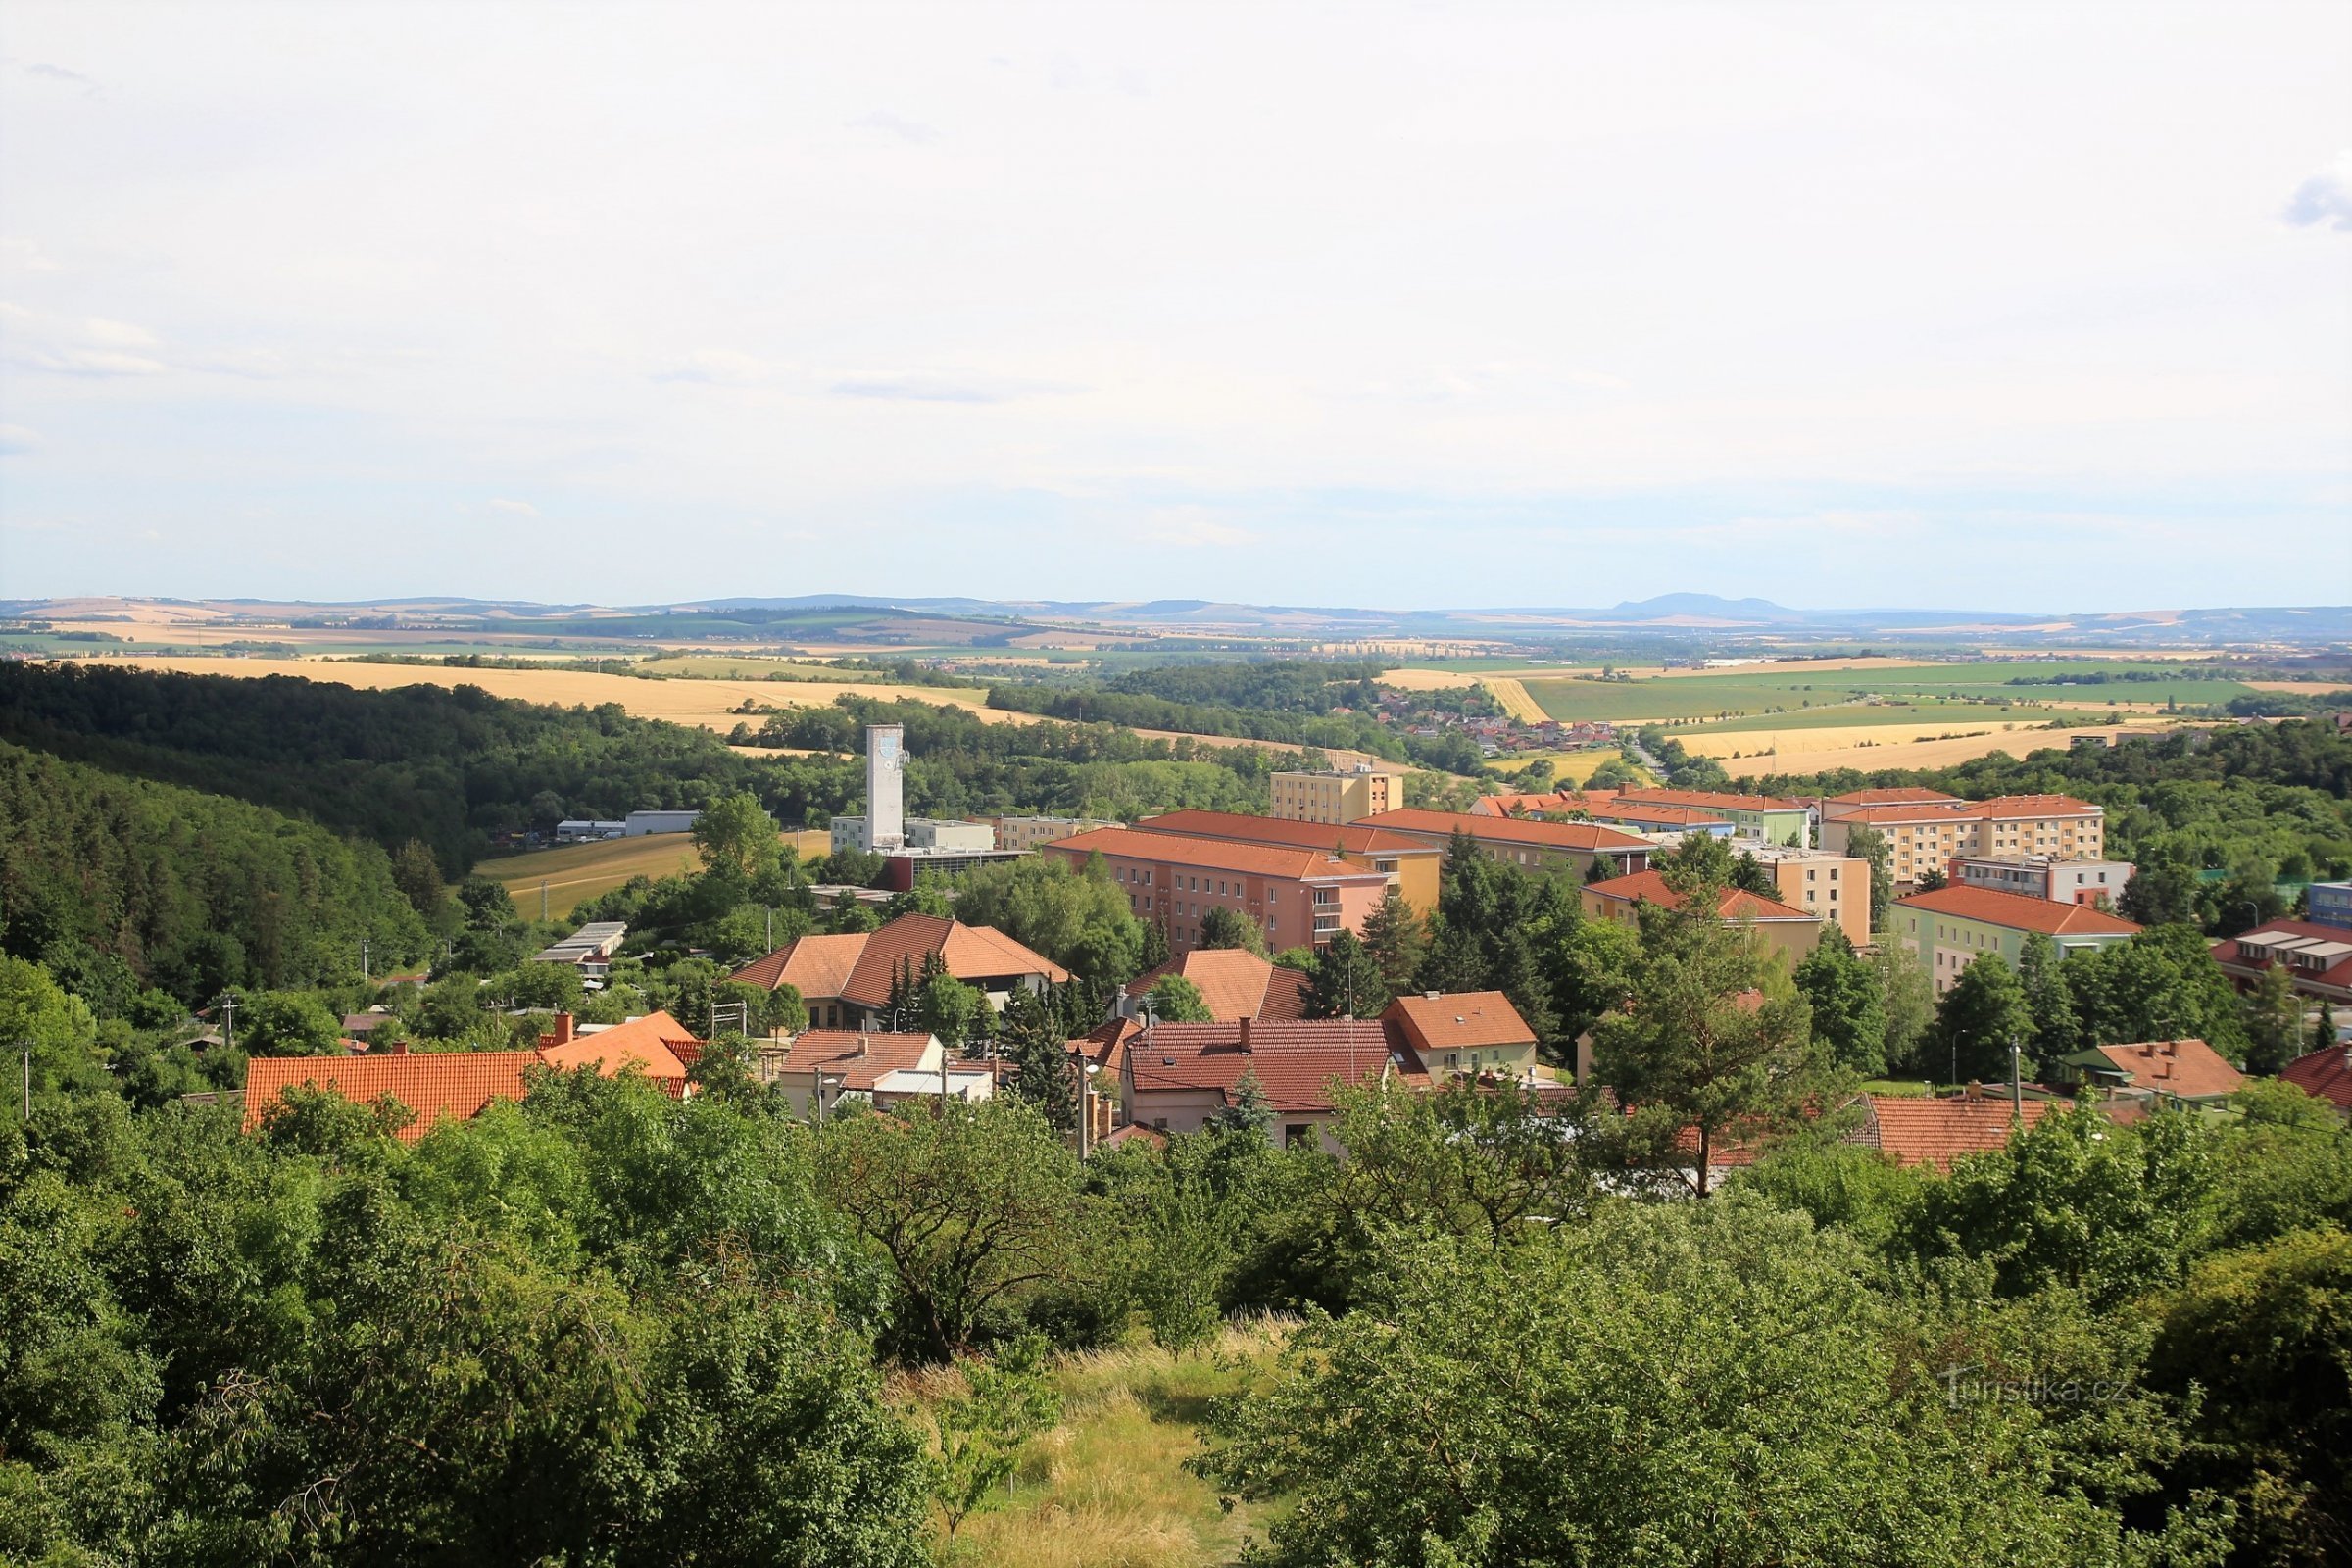 Cele mai interesante priveliști de la turnul de observație sunt spre sud, spre câmpiile fertile din Moravia de Sud